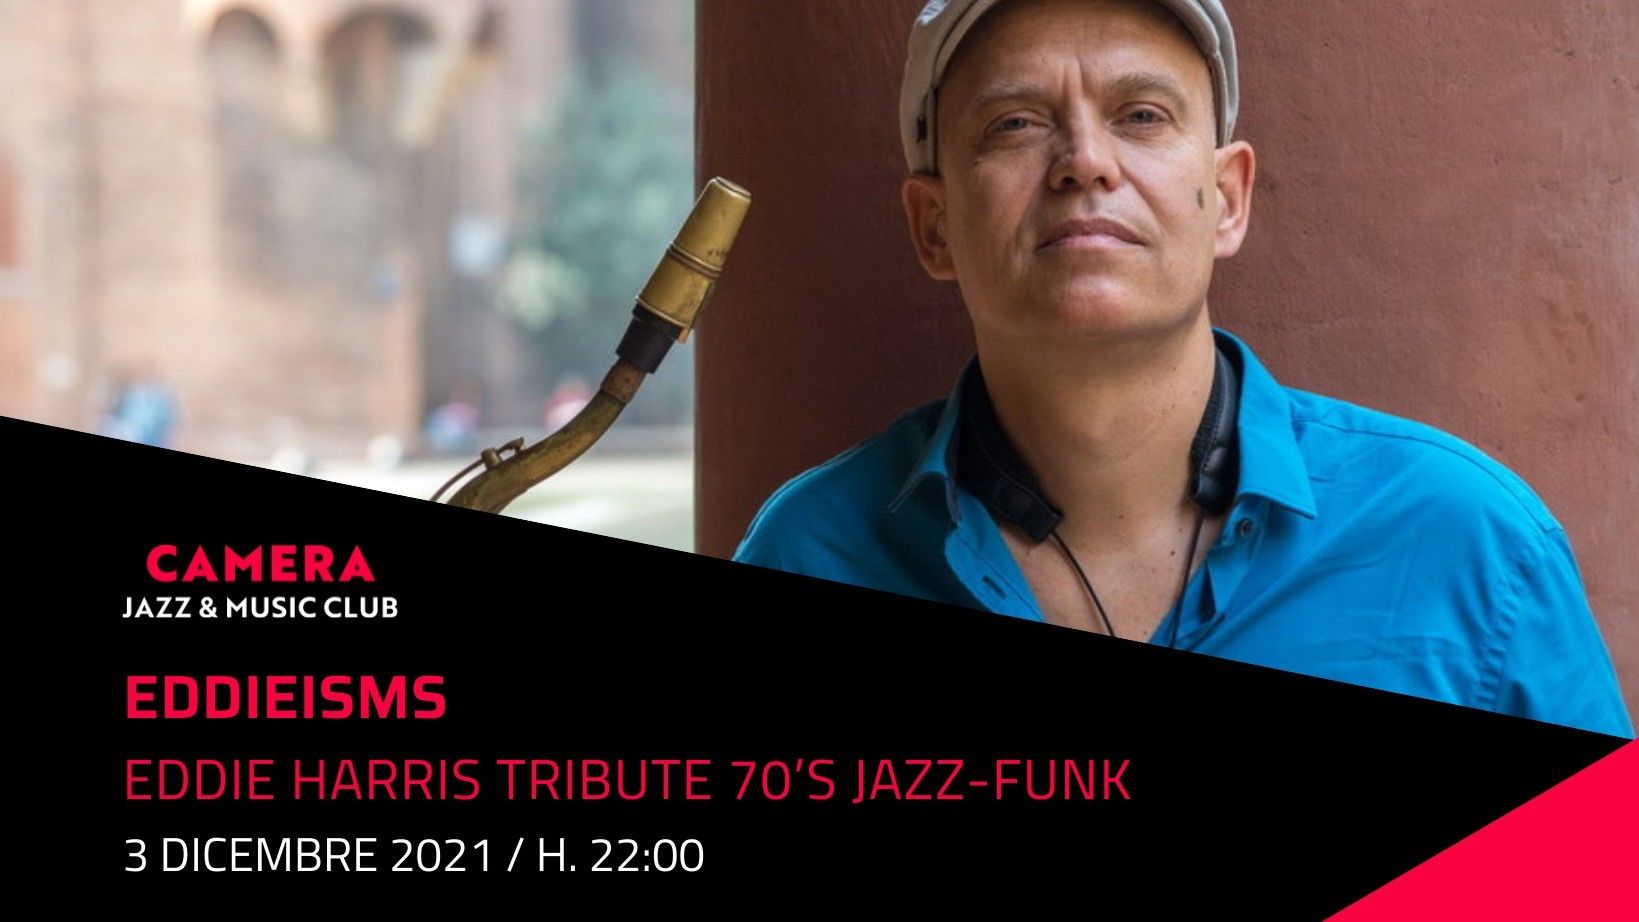 Eddieisms - Eddie Harris Tribute 70's Jazz-Funk